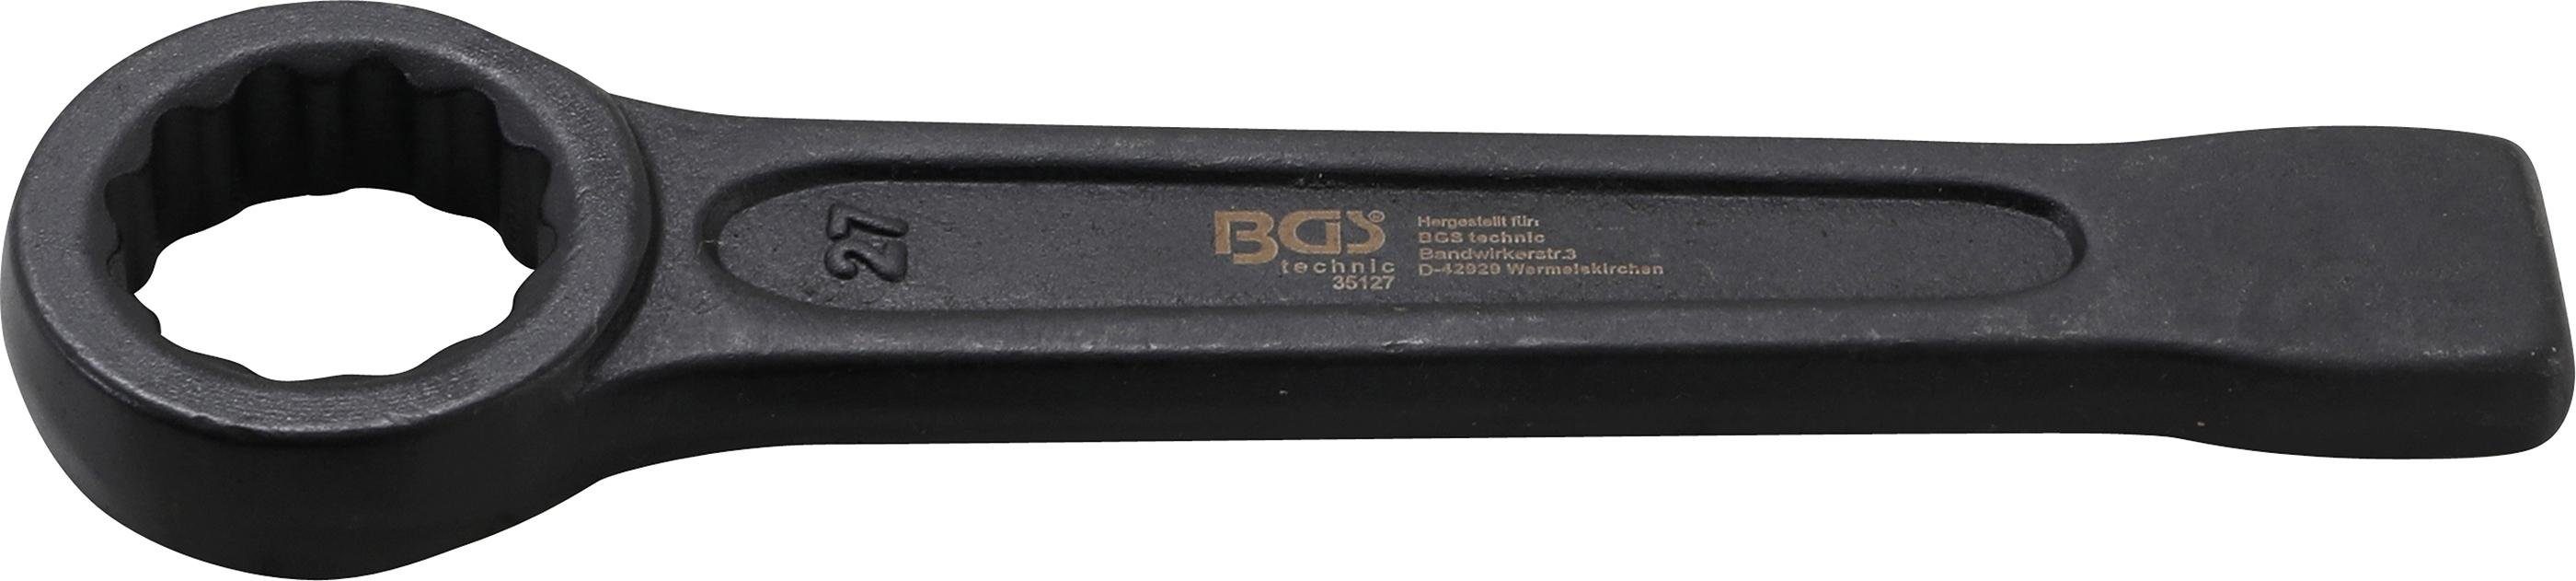 BGS technic Ringschlüssel Schlag-Ringschlüssel, SW 27 mm